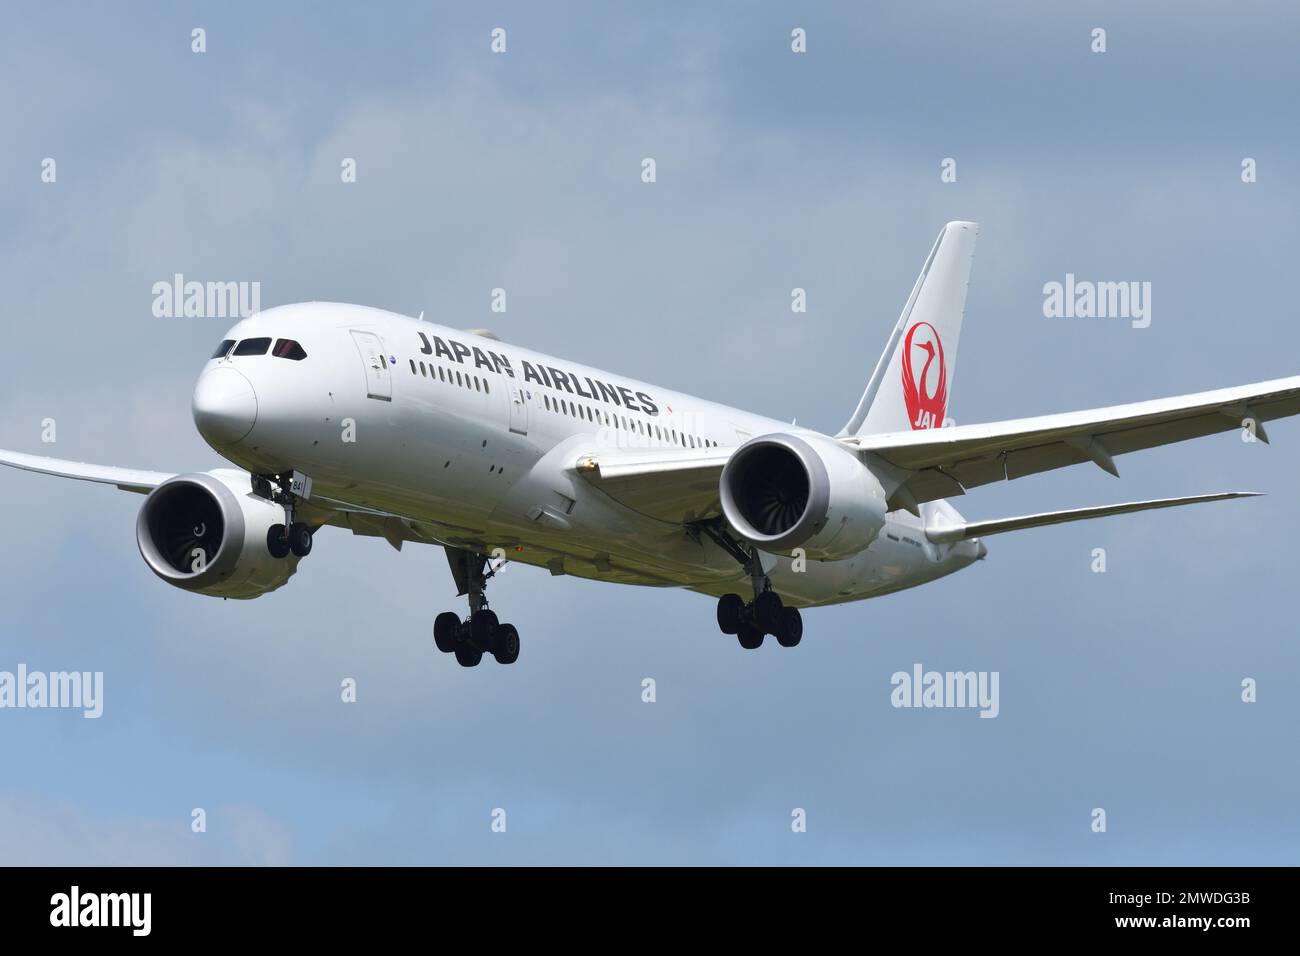 Préfecture de Chiba, Japon - 18 mai 2019: Japan Airlines (JAL) Boeing B787-8 Dreamliner (JA841J) avion passager. Banque D'Images